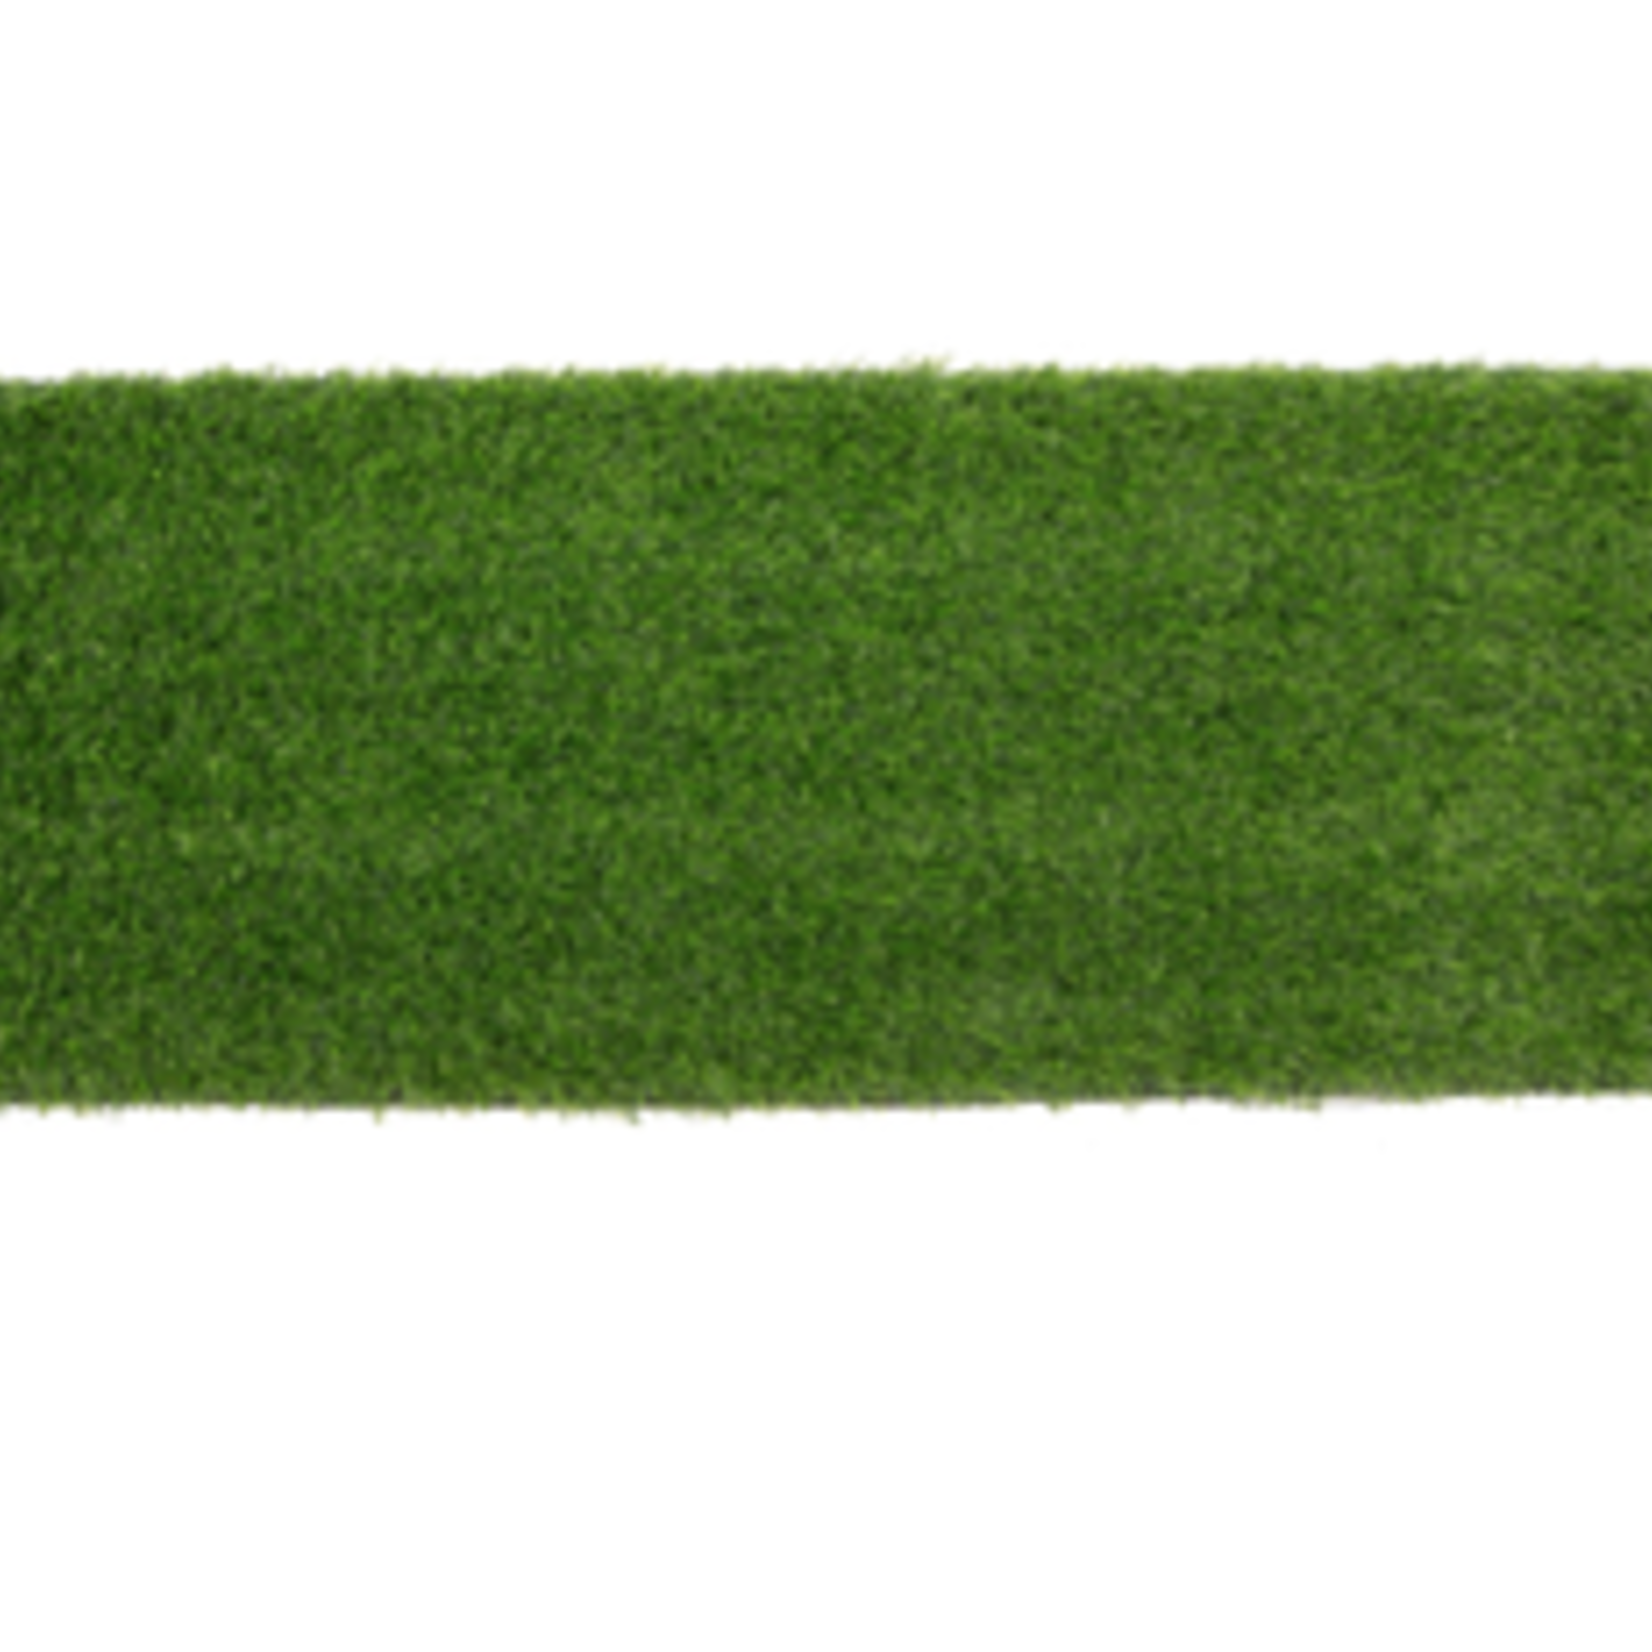 39½" x 11½" x ¾" ARTIFICIAL GRASS RUNNER